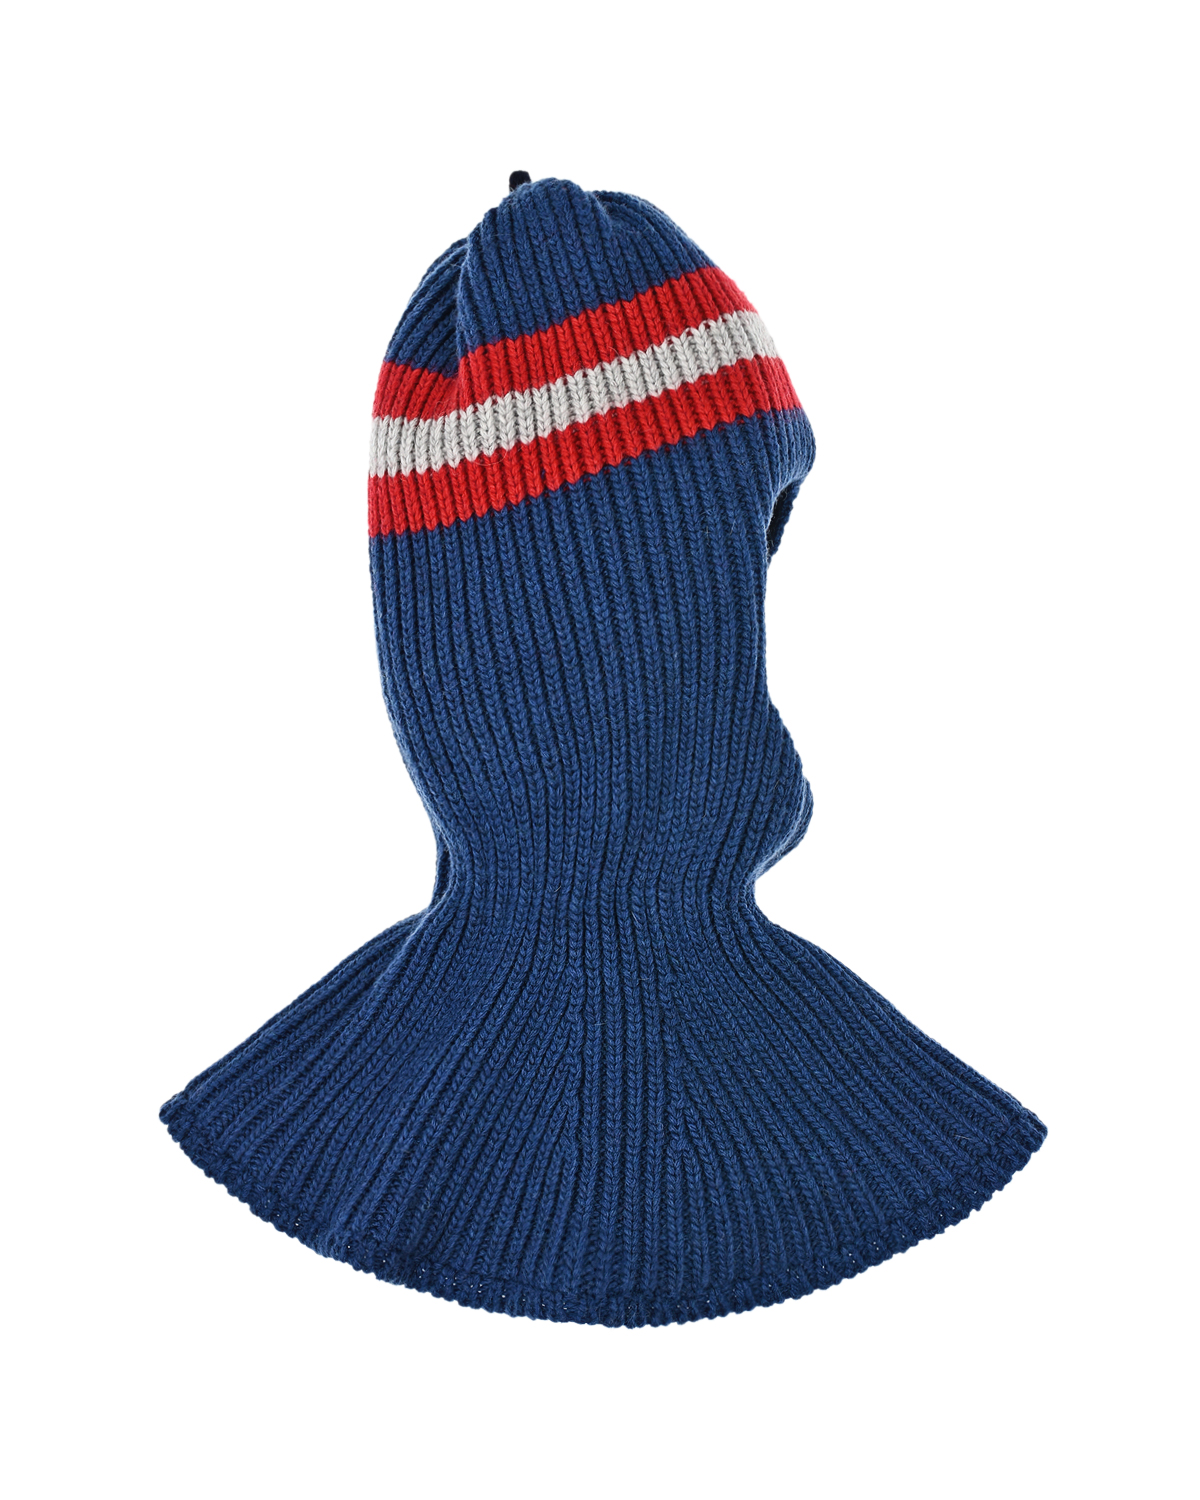 Синяя шапка-шлем с полосками Chobi детская, размер 52/54, цвет синий